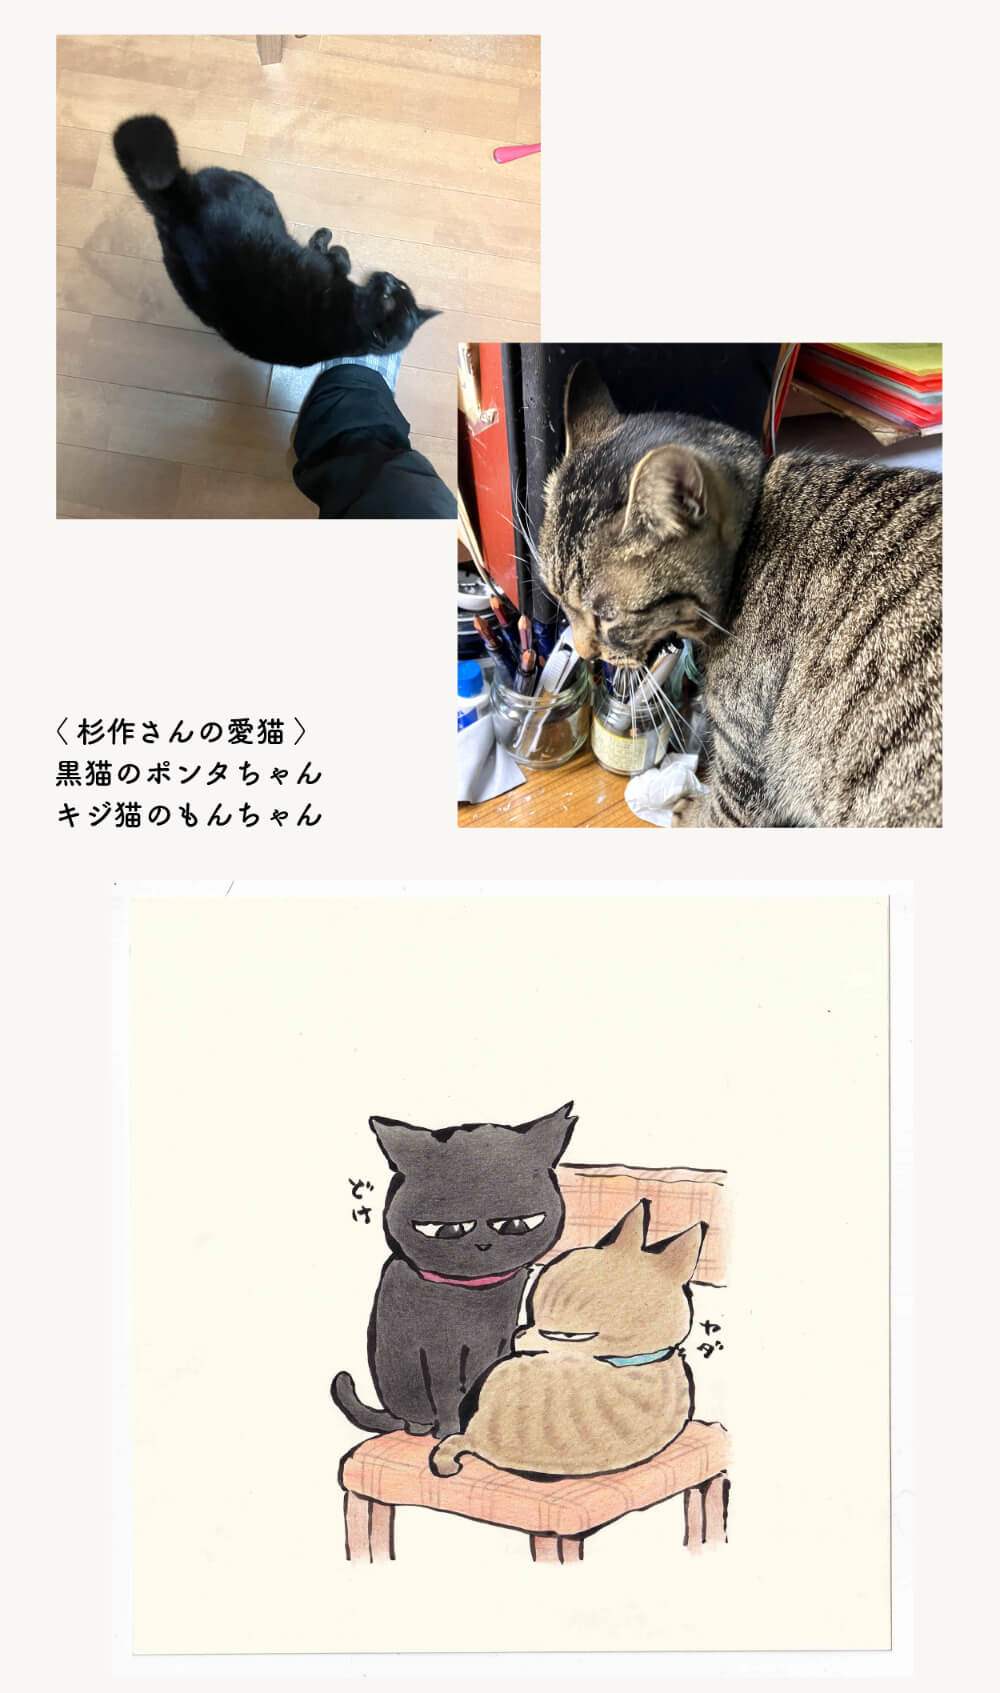 漫画家・杉作さんの愛猫と描き下ろしイラスト